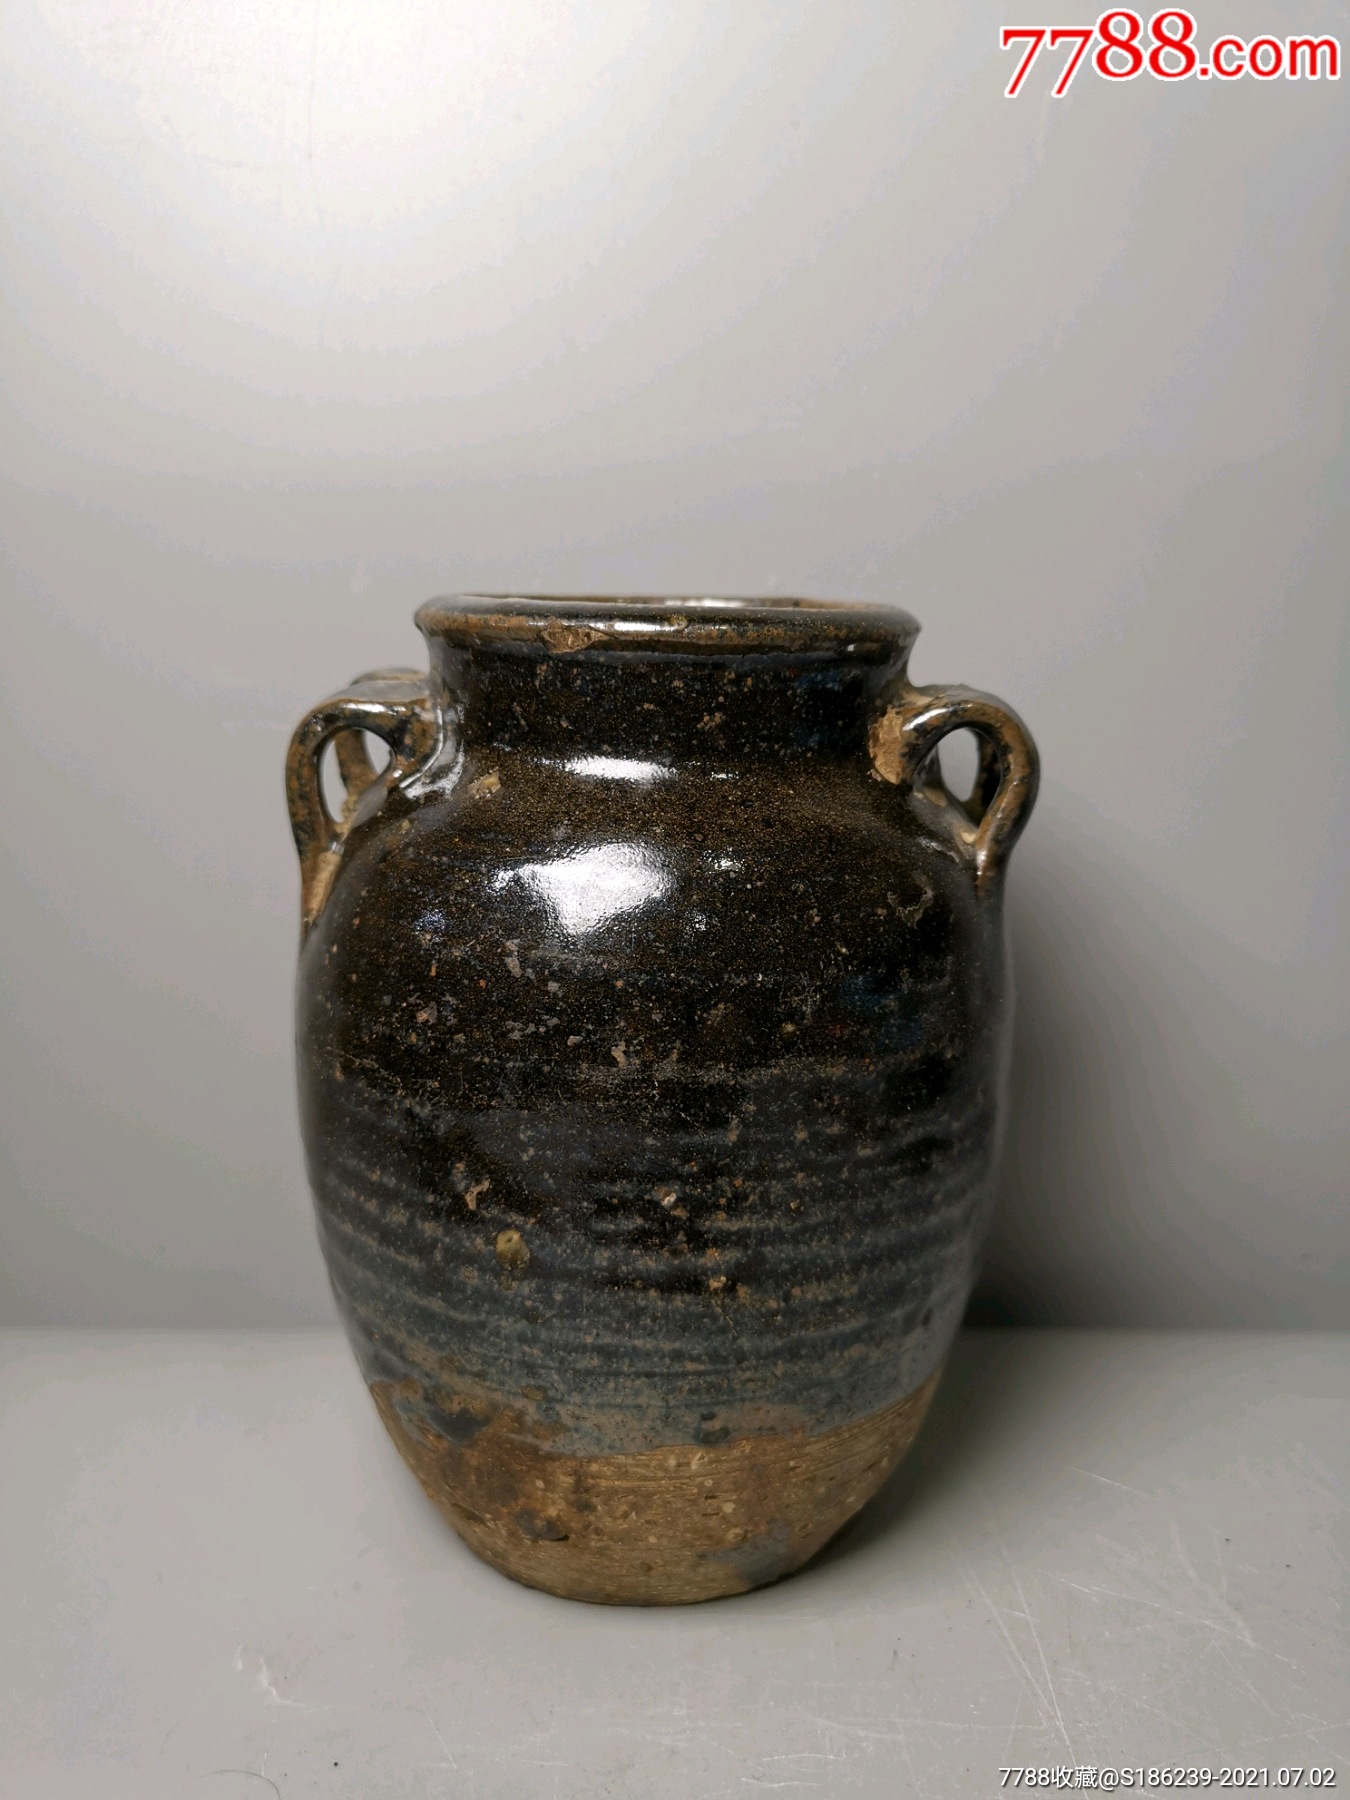 明清老窑瓷酱釉四系罐规格:高145厘米,双耳距115厘米,口径7厘米